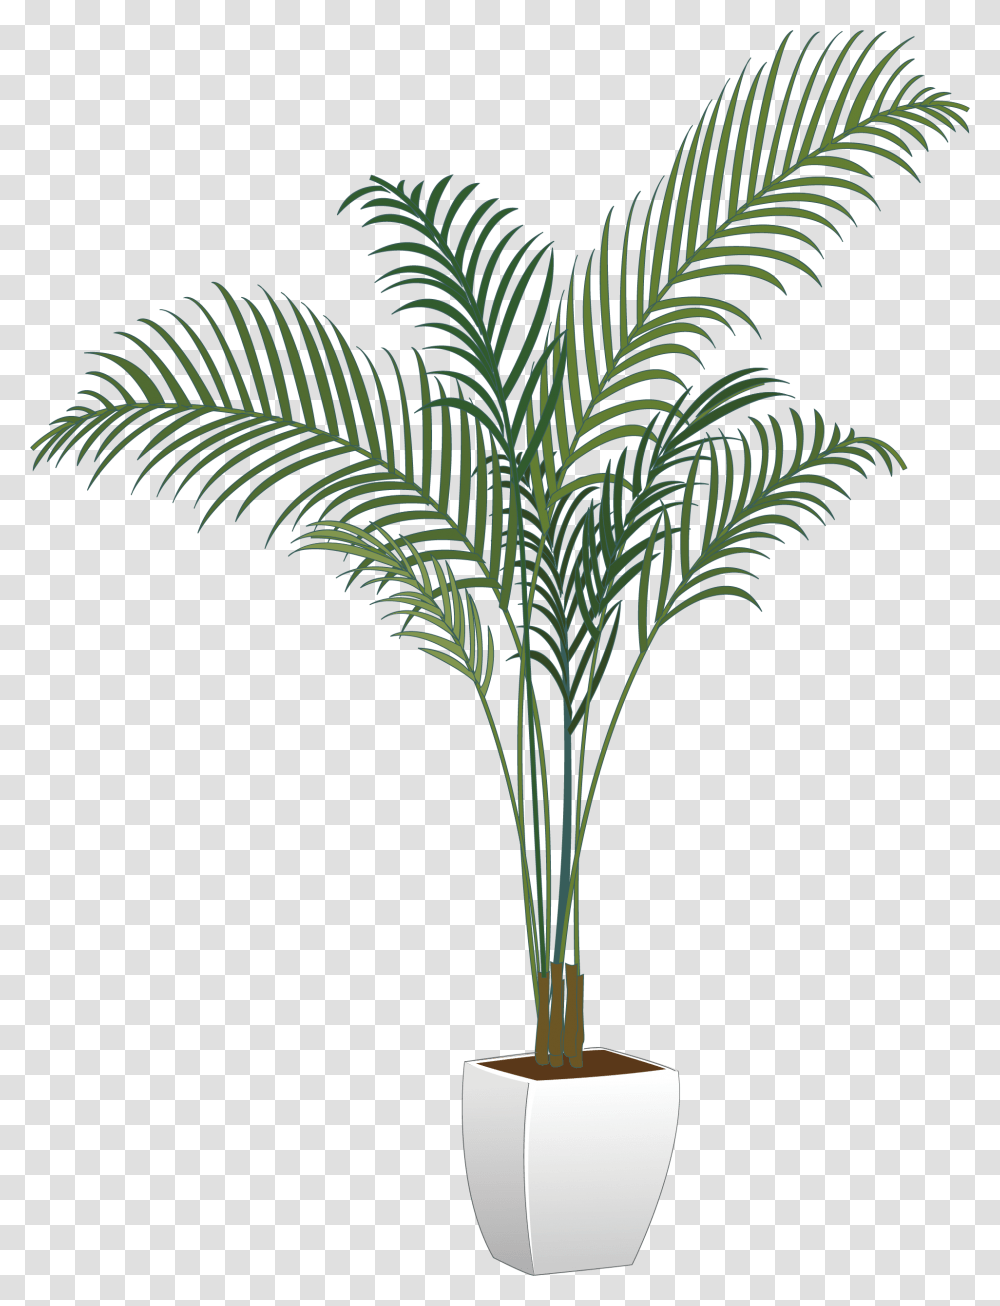 Background Pot Plant, Palm Tree, Arecaceae, Lamp Transparent Png